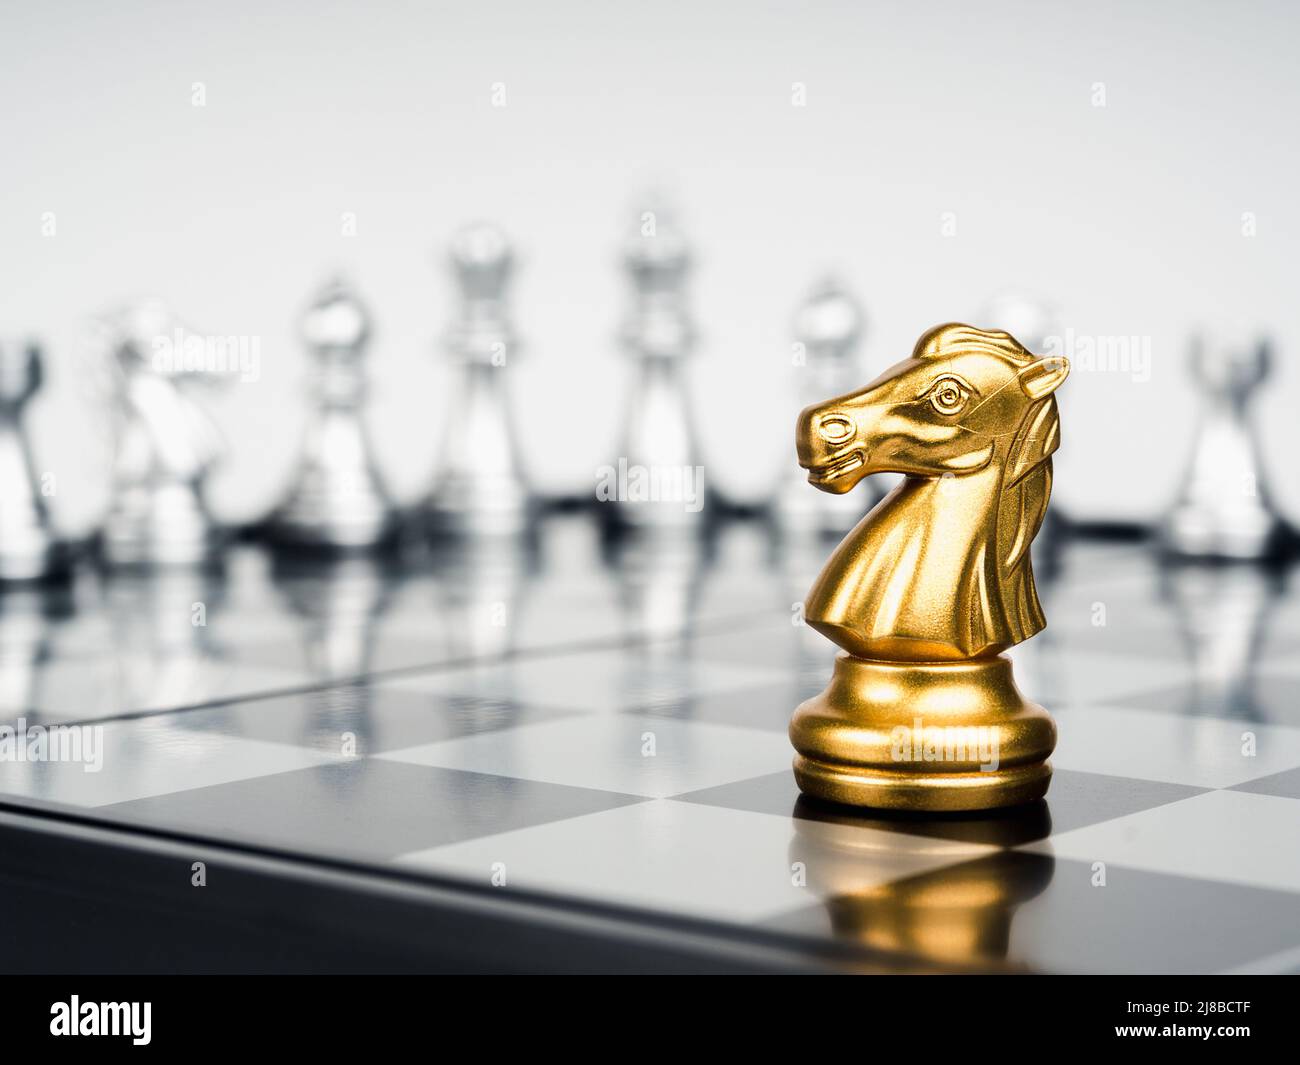 El caballo de oro, la pieza de ajedrez de caballero está sola delante de  piezas de ajedrez de plata sobre tablero de ajedrez sobre fondo blanco.  Liderazgo, luchador, sobreviviente, com Fotografía de